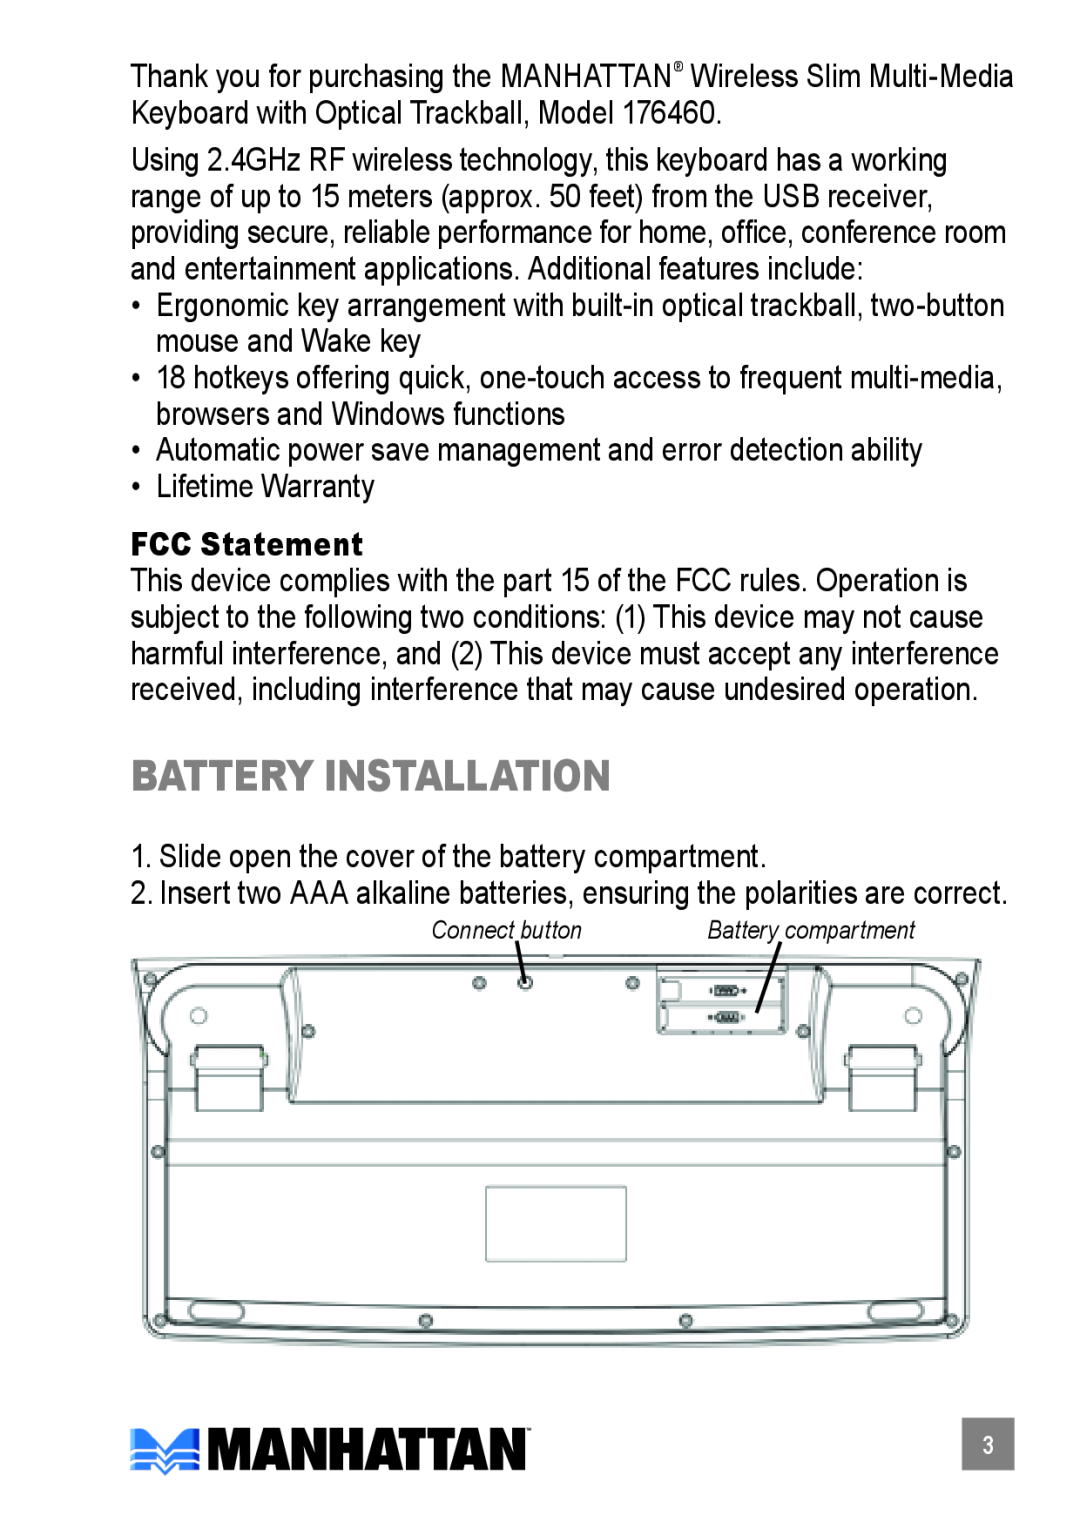 Manhattan Computer Products 176460 quick start Battery installation, FCC Statement 